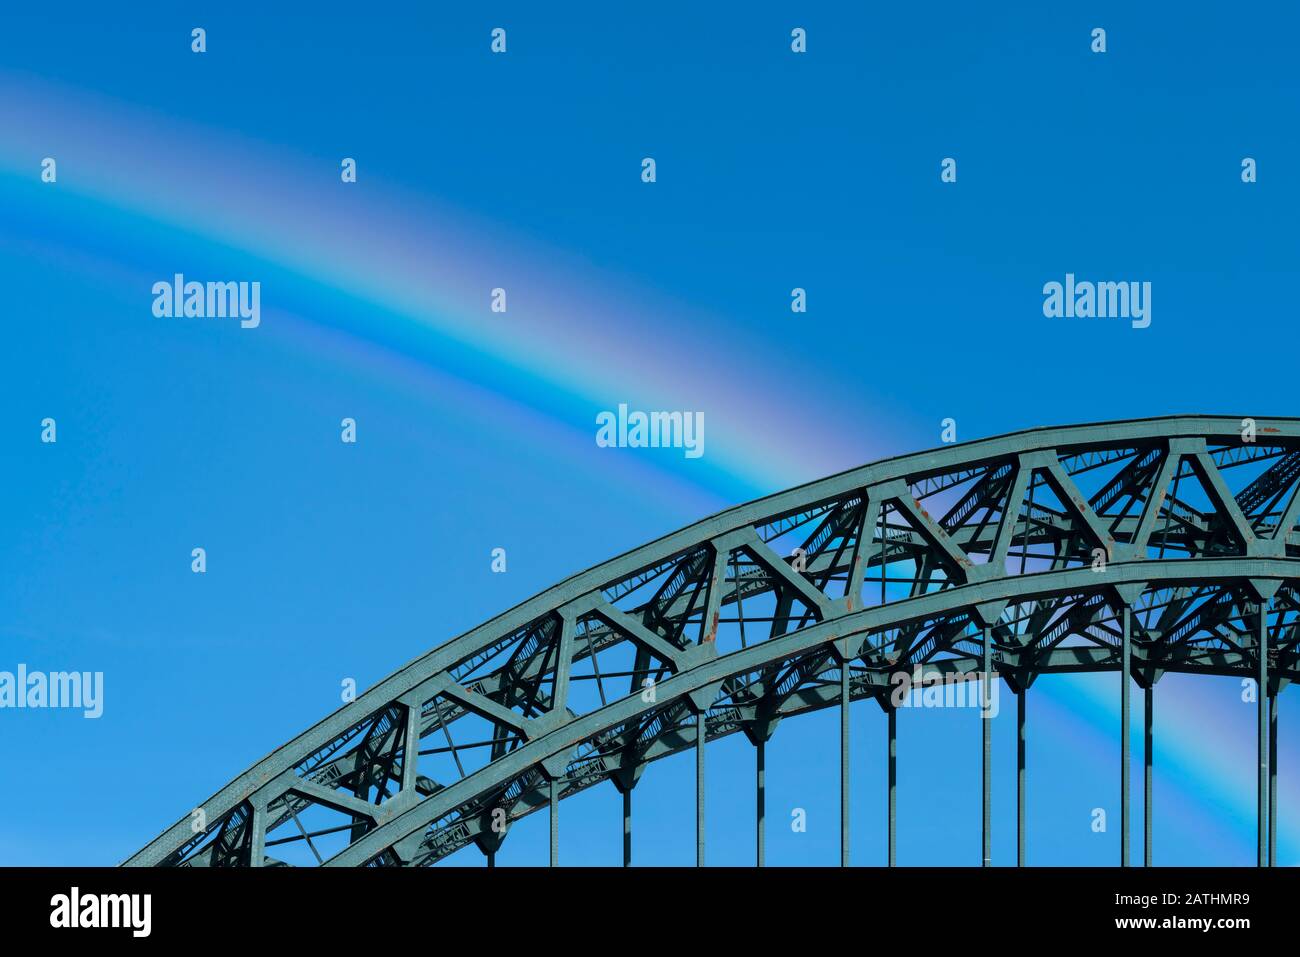 La curva del Puente Tyne, reflejada por la curva de un arco iris, Newcastle upon Tyne, Inglaterra Foto de stock